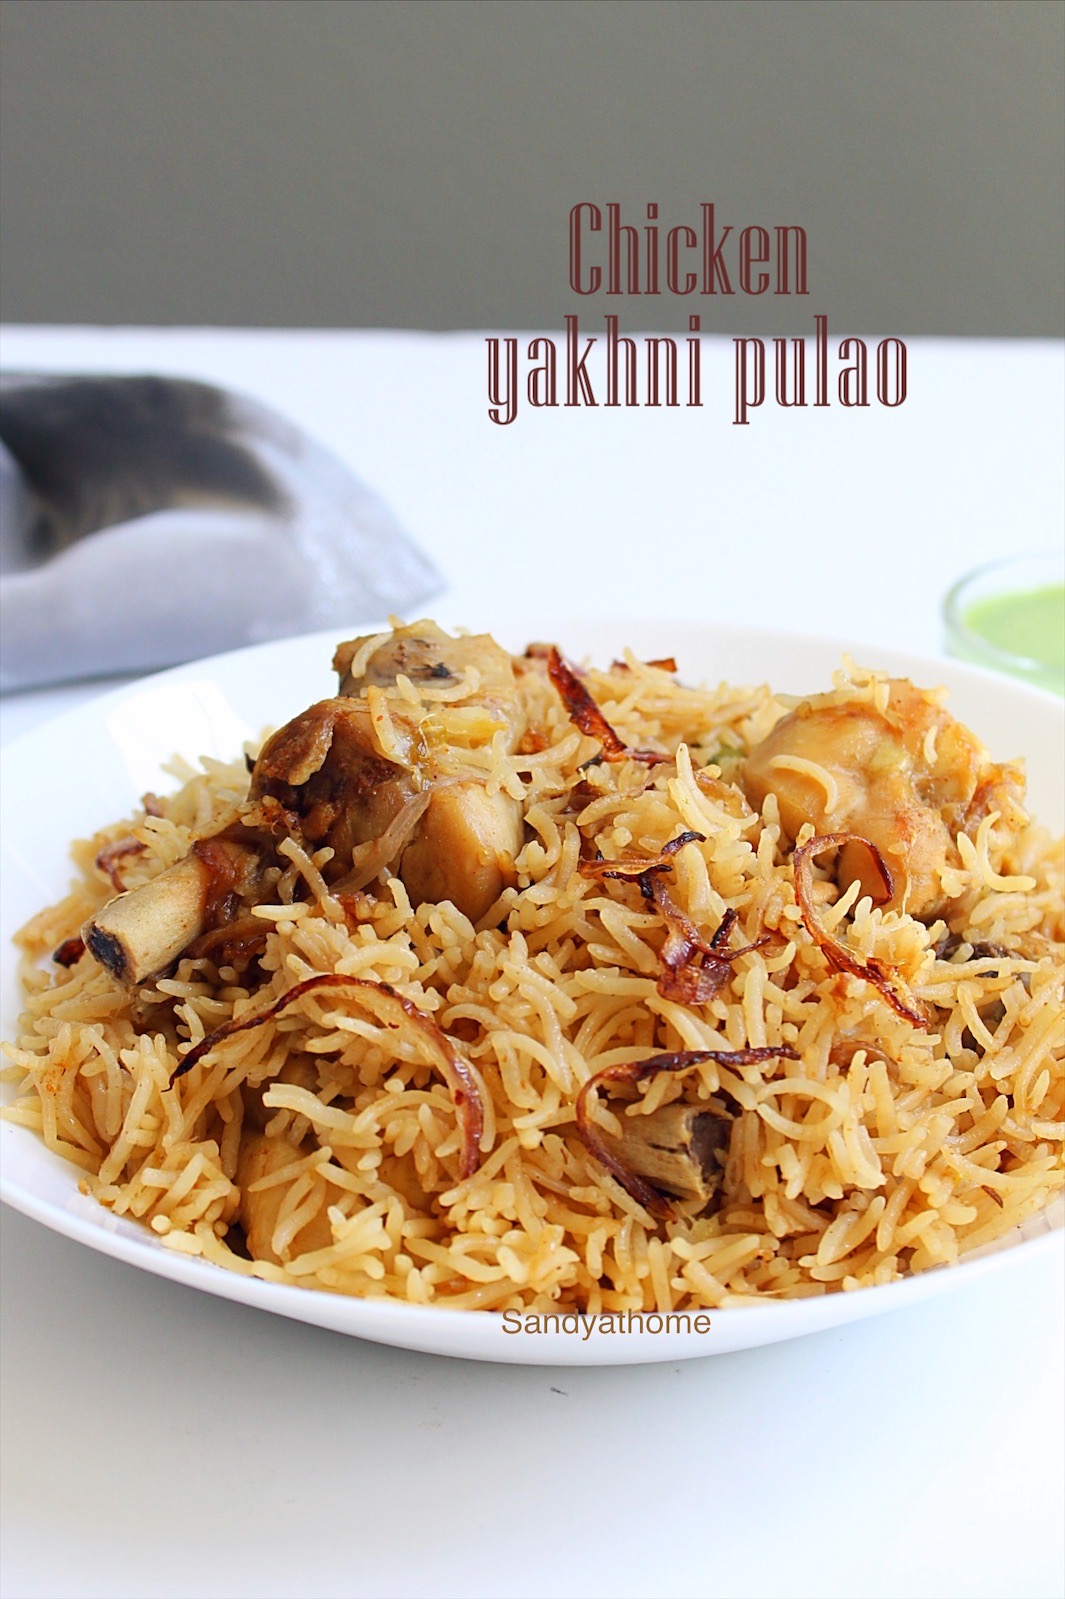 Chicken yakhni pulao recipe, Yakhni pulao recipe - Sandhya's recipes